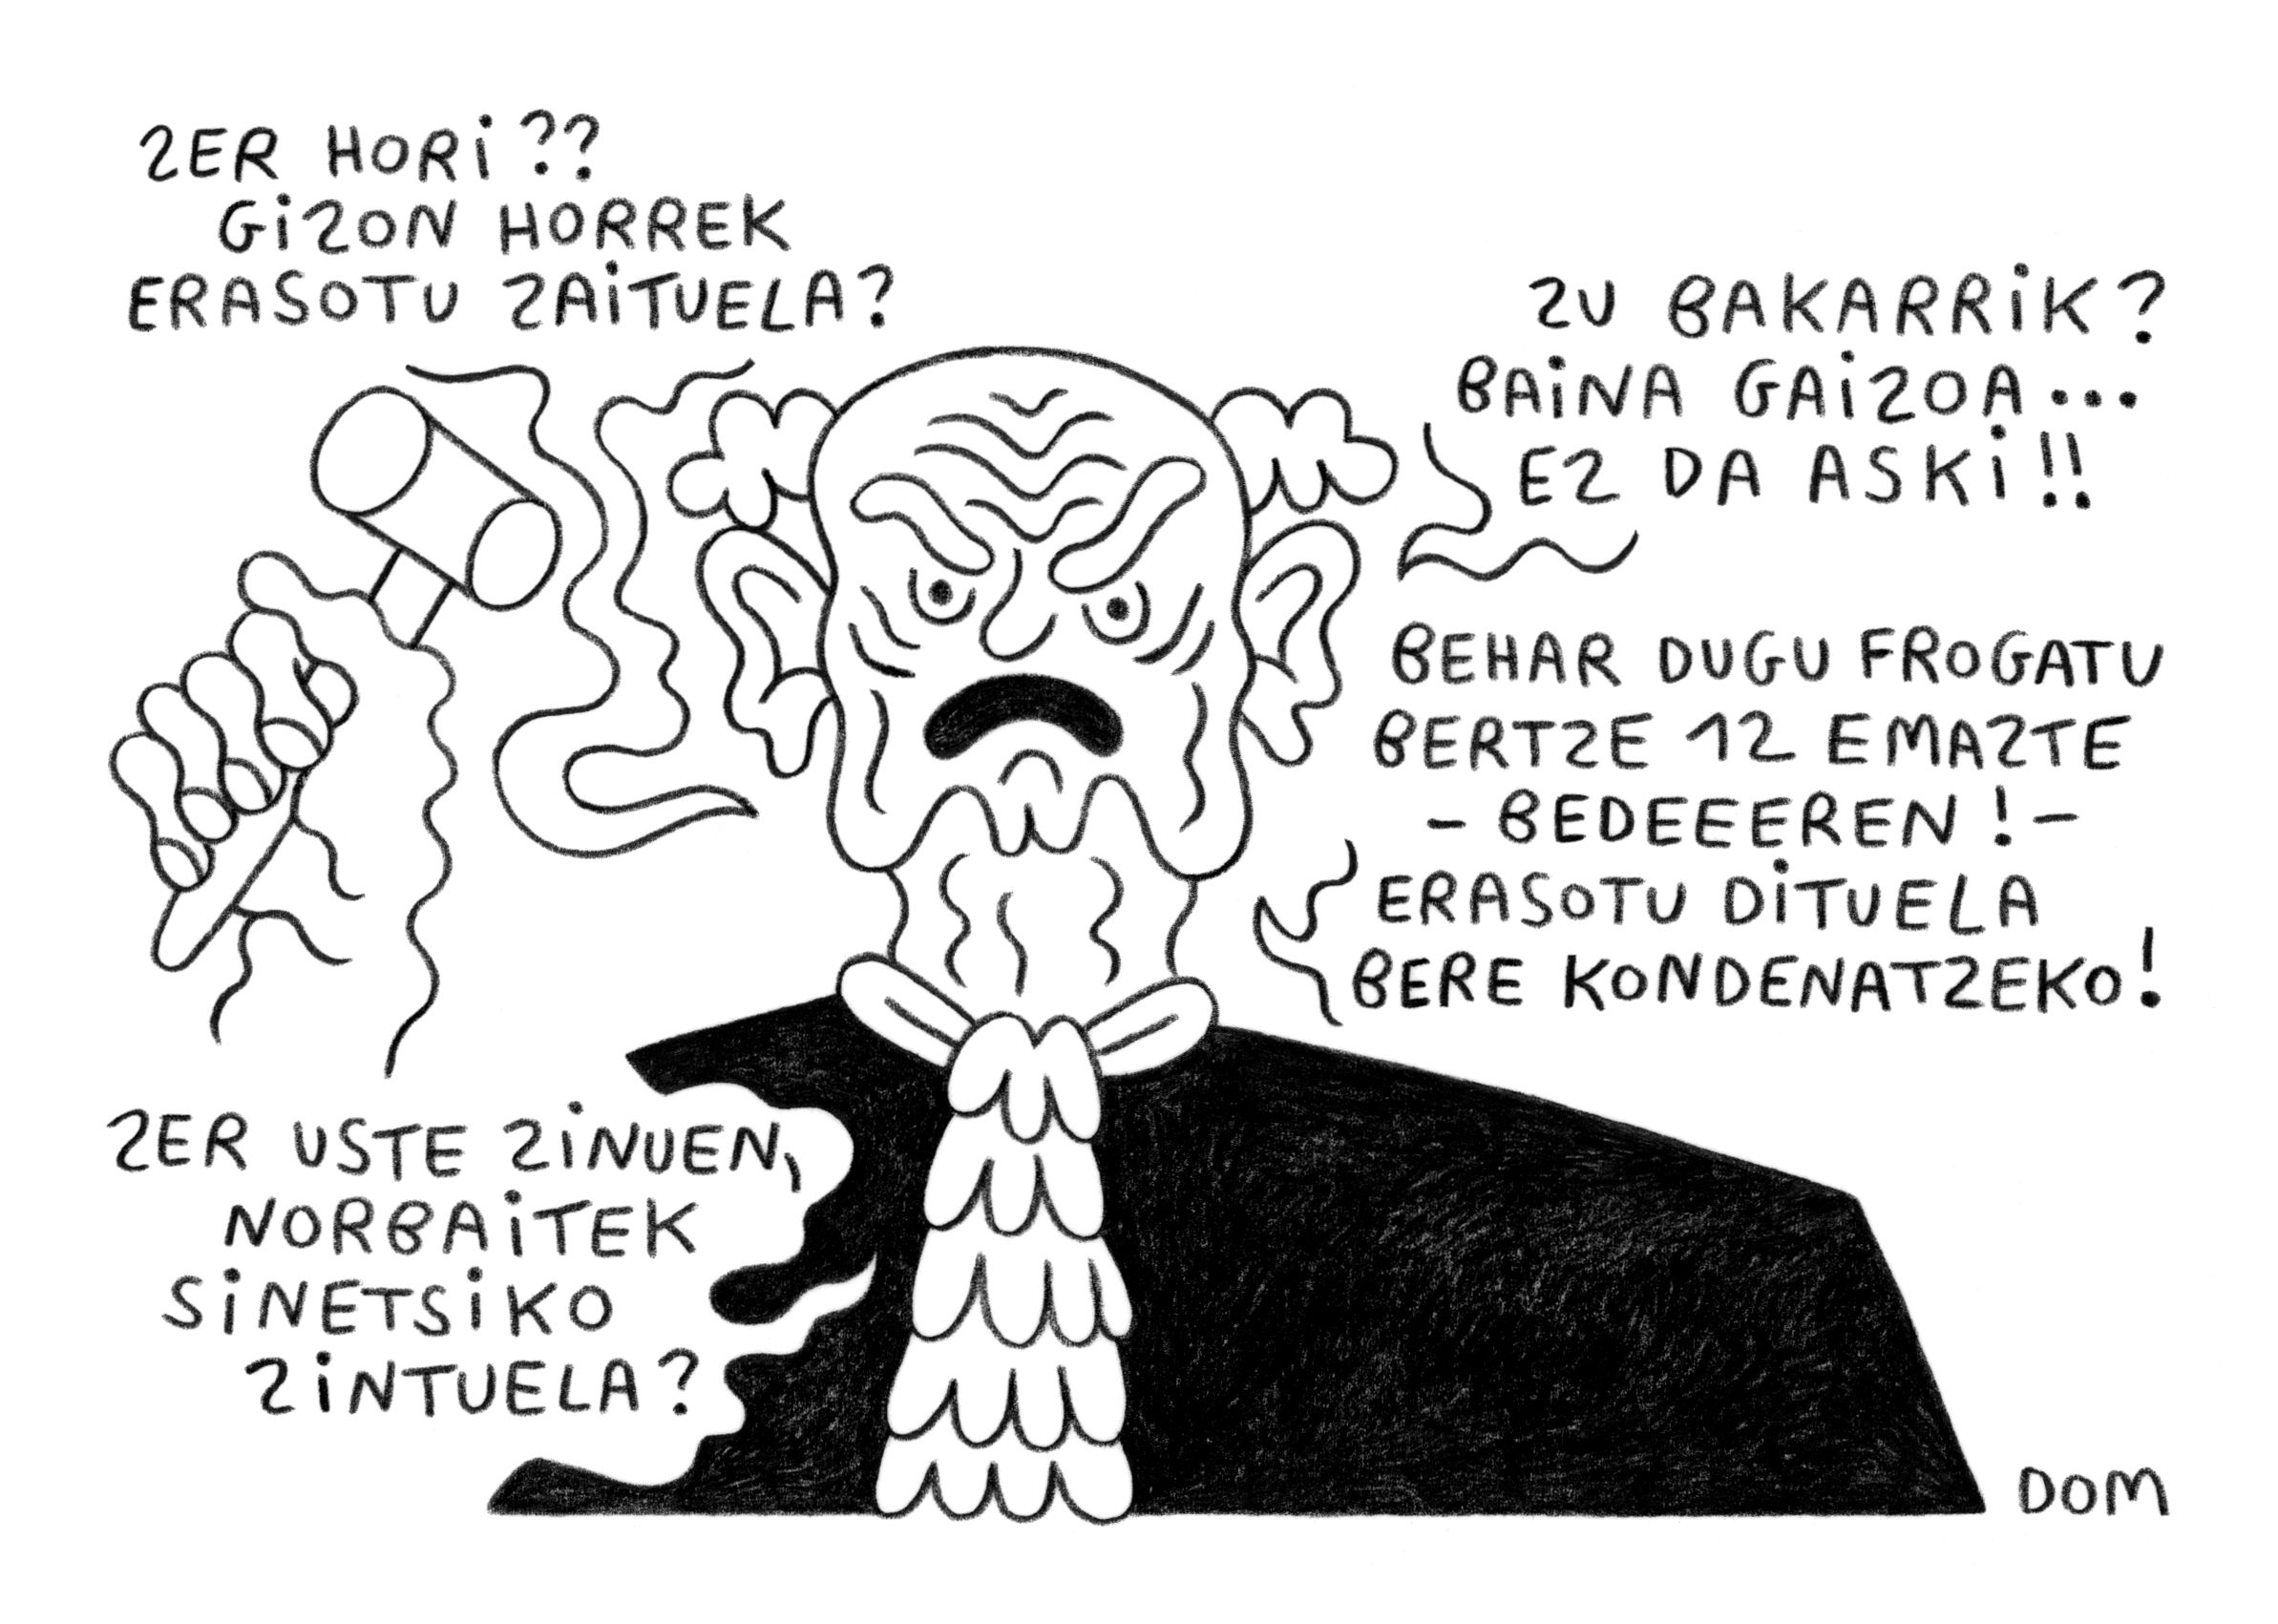 Justizia - DOMen Marrazkiritzia